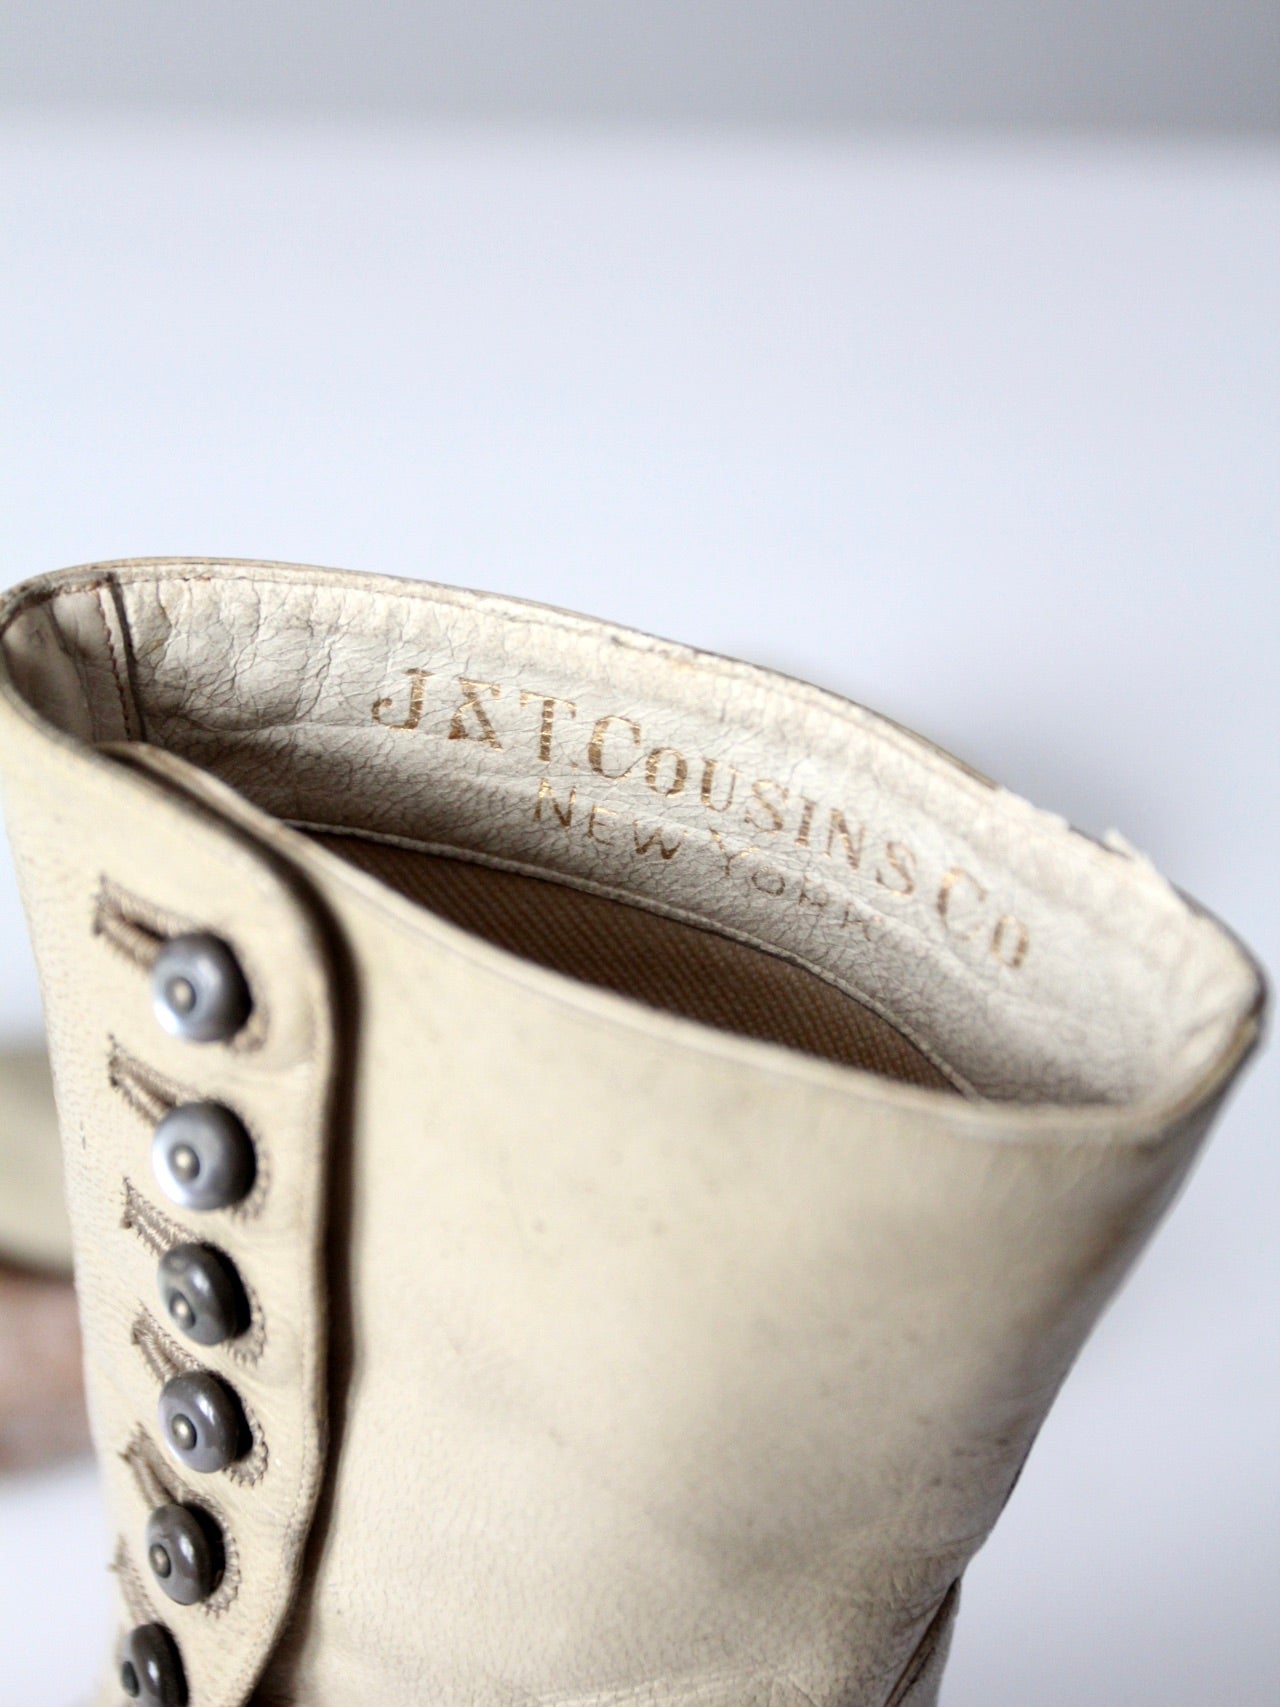 antique J&T Cousins leather boots